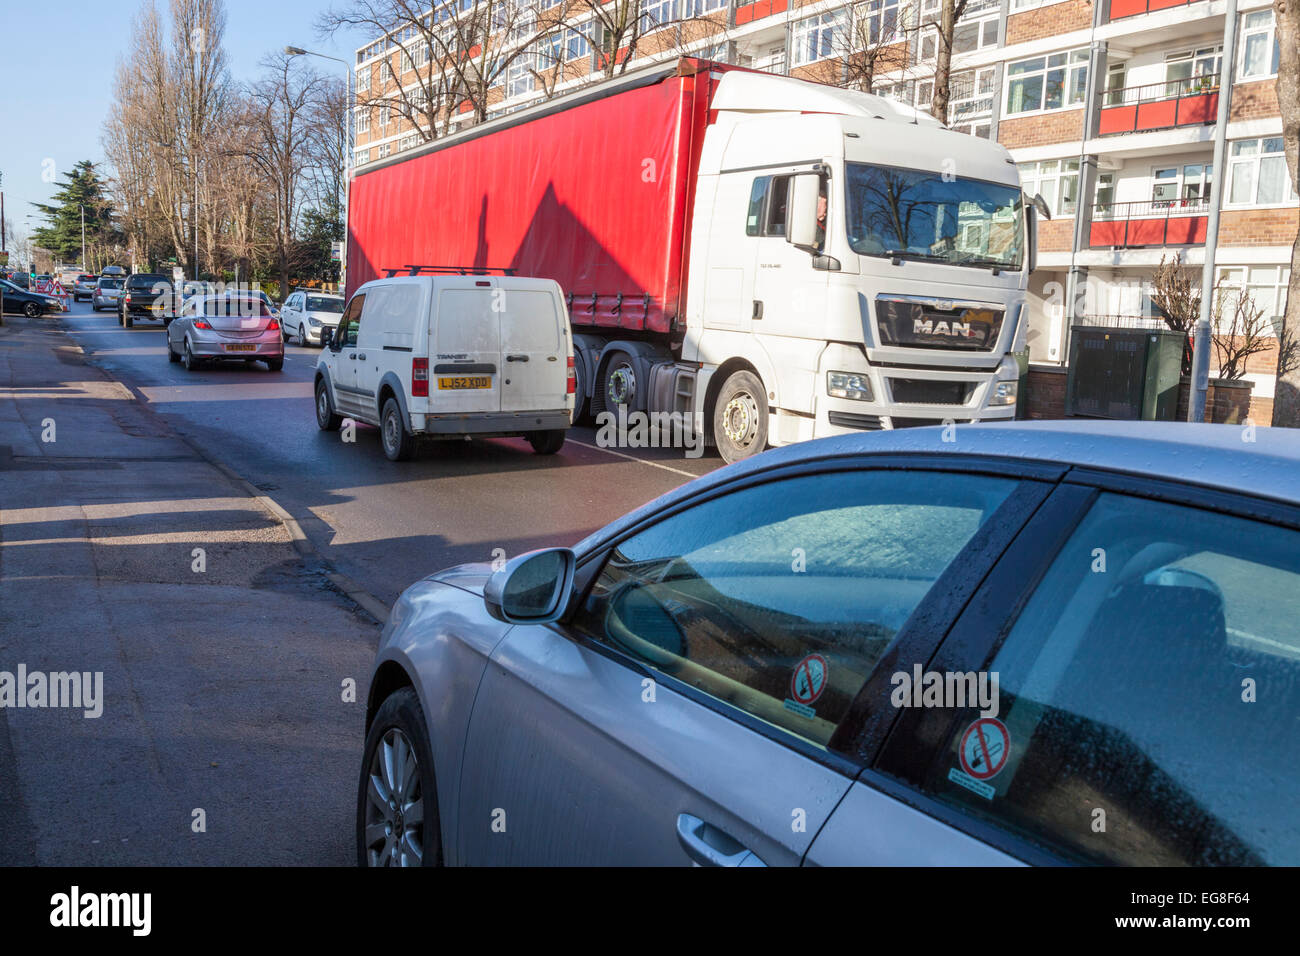 Coche aparcado en la acera de una calle transitada con tráfico intenso en una zona residencial. West Bridgford, Nottinghamshire, Inglaterra, Reino Unido. Foto de stock